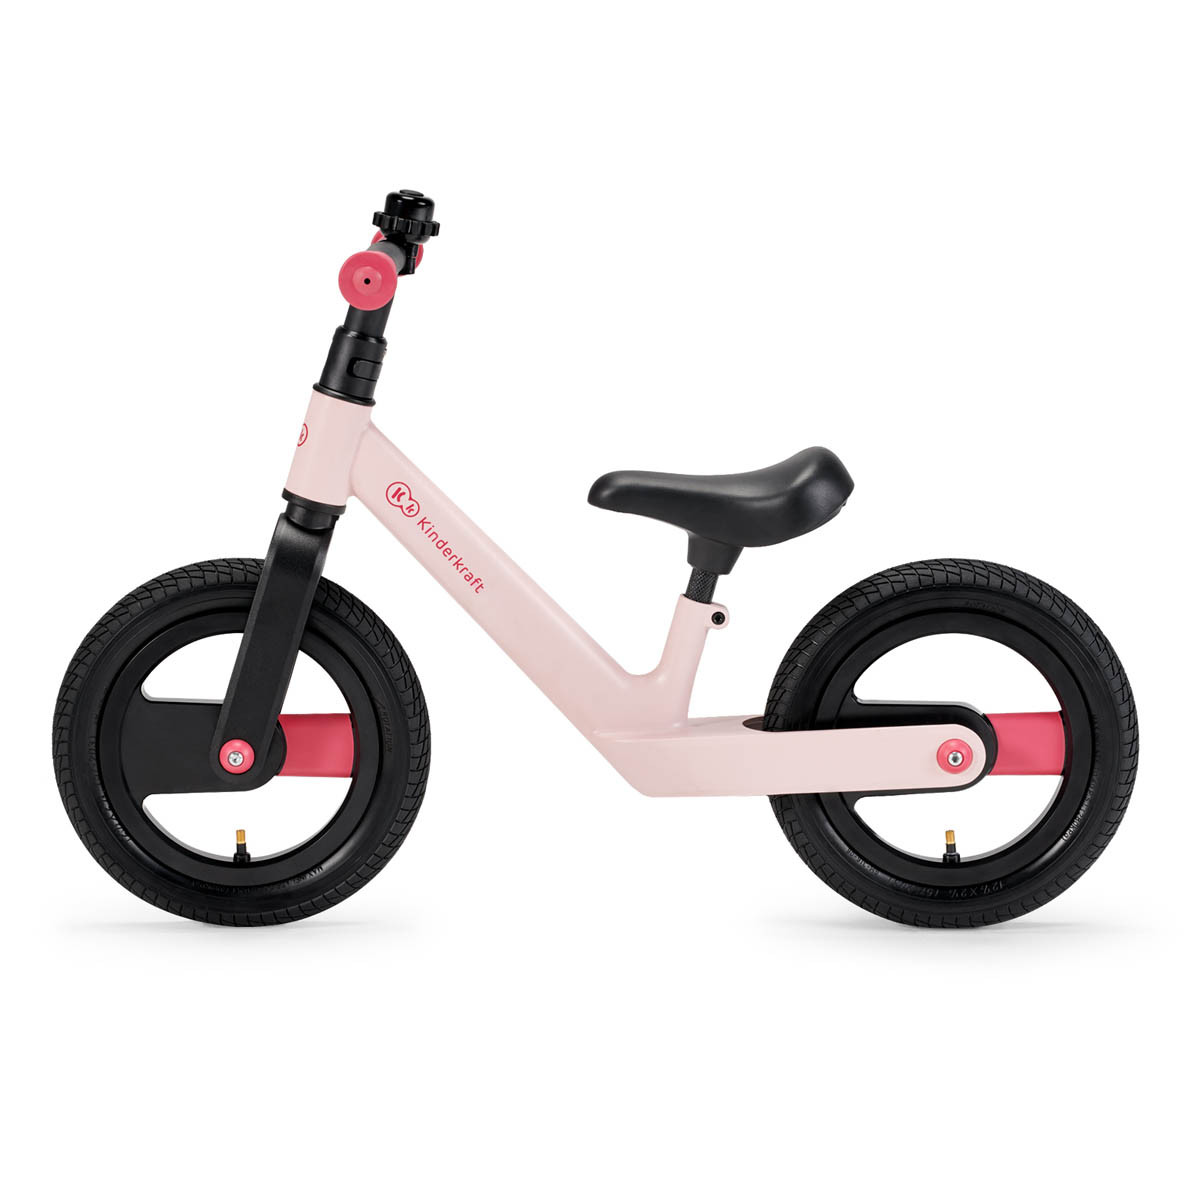 Kinderkraft goswift bicicleta de equilibrio está equipado con un asiento cómodo, suave y cubierto de piel ecológica.